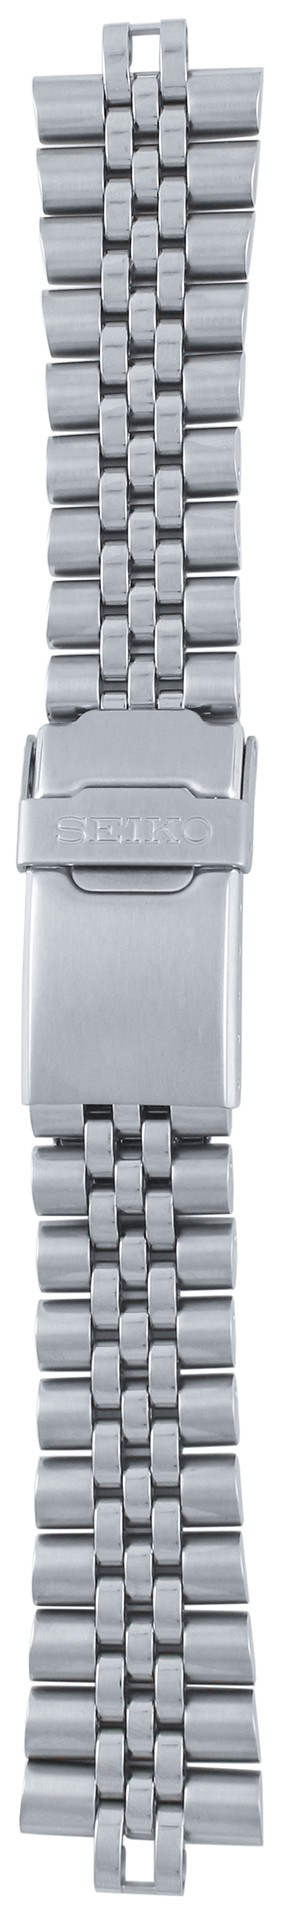 Браслет наручных часов металлический Seiko 7S26-0020